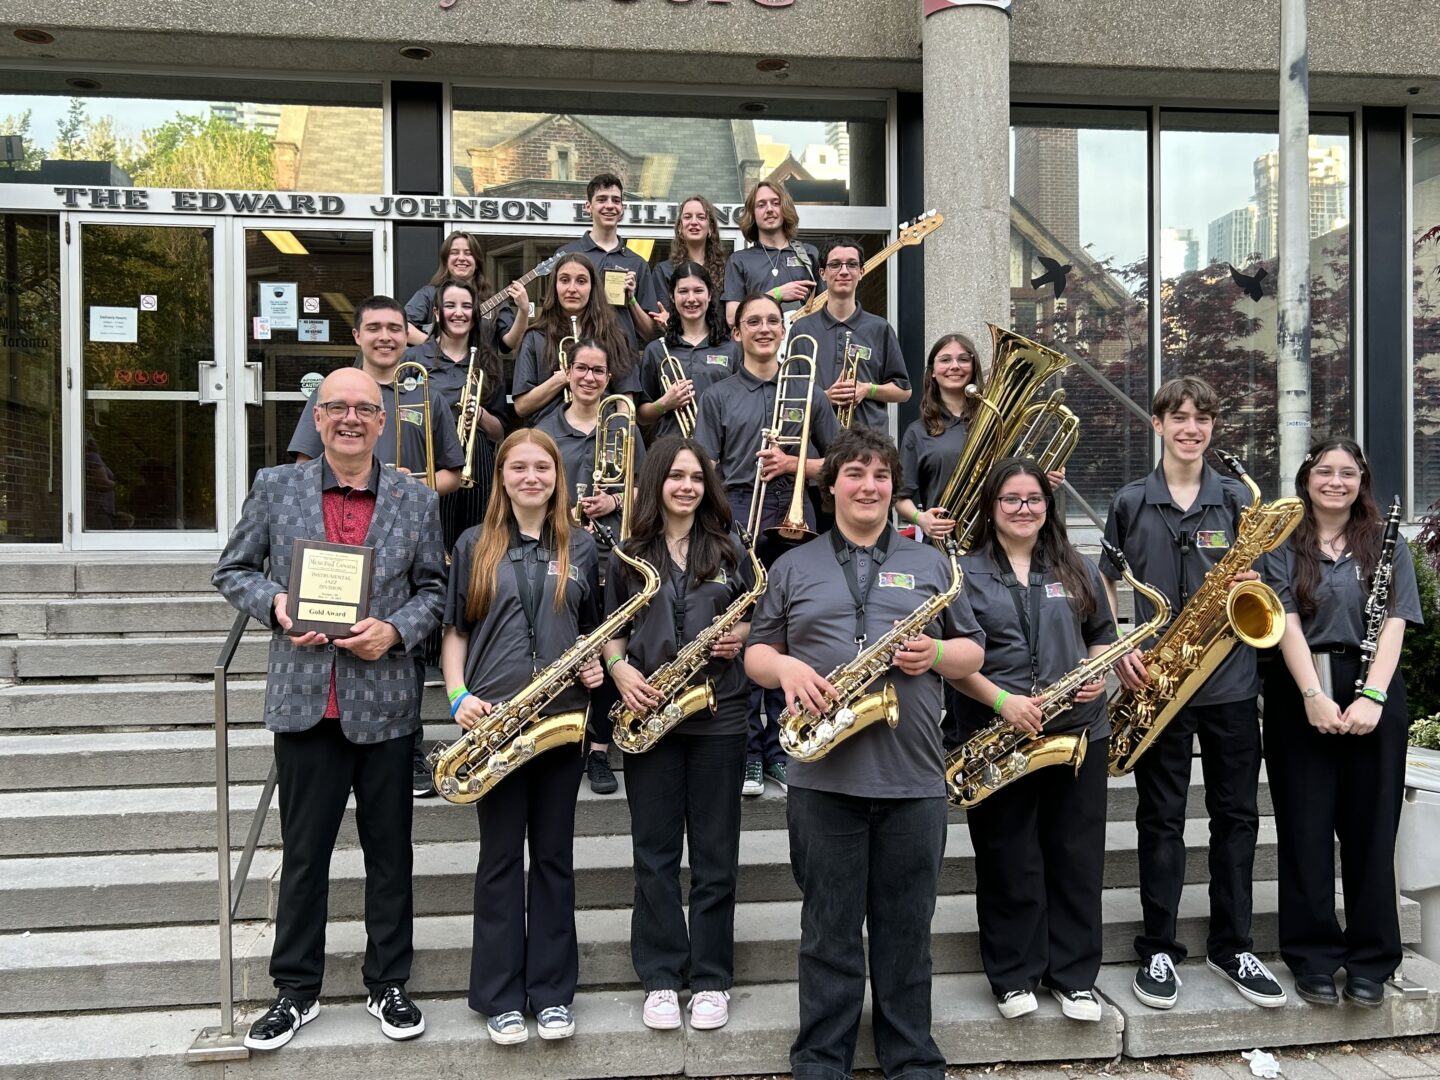 Les membres du Jazz Band de la polyvalente Hyacinthe-Delorme après l’obtention de leur médaille d’or aux Finales nationales de MusicFest Canada. Photo gracieuseté